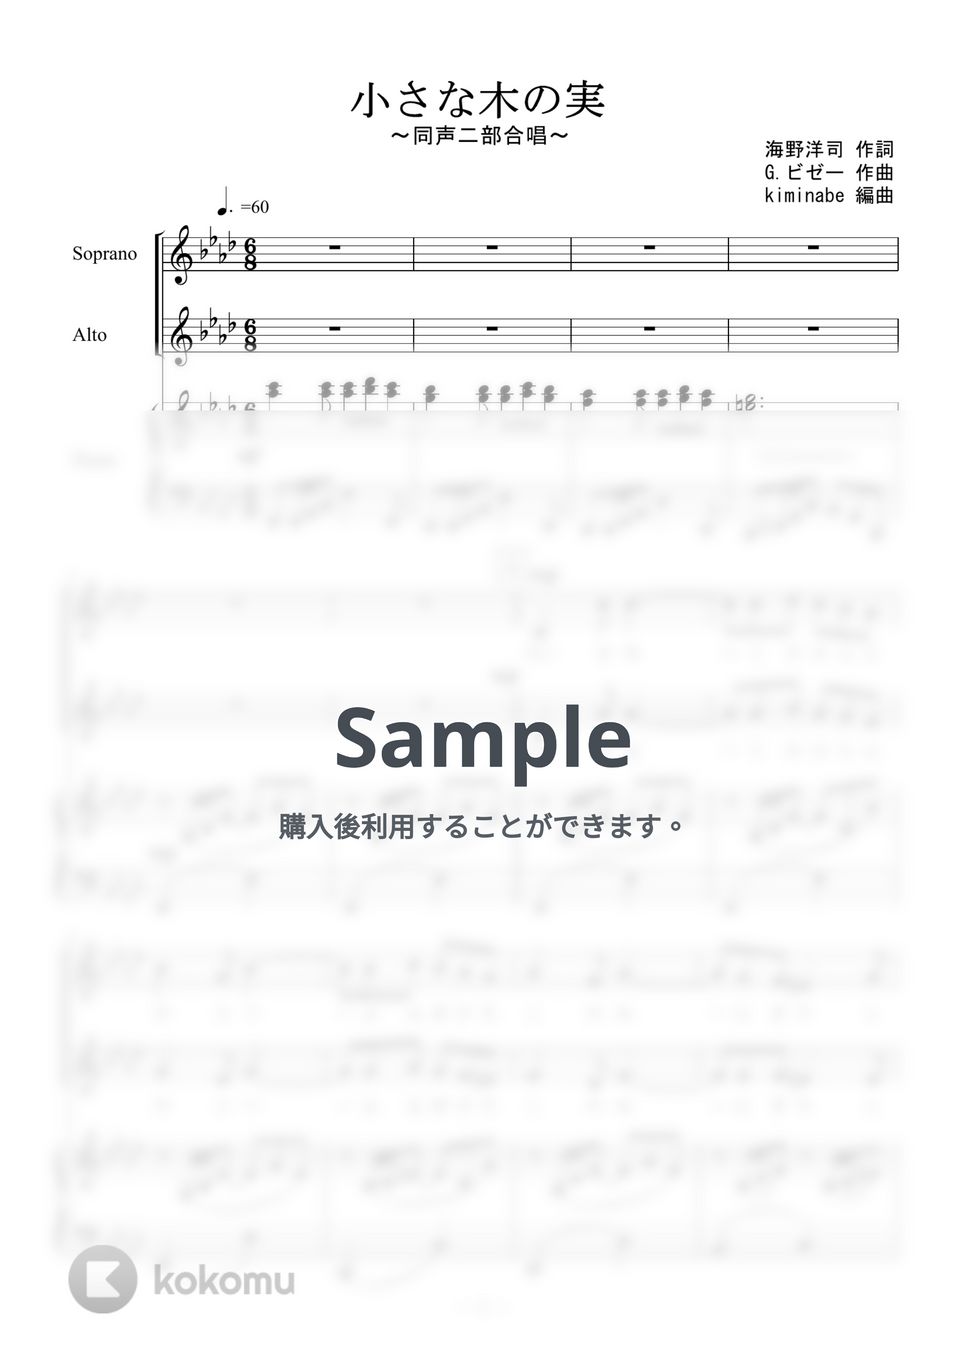 ビゼー - 小さな木の実 (同声二部合唱) by kiminabe